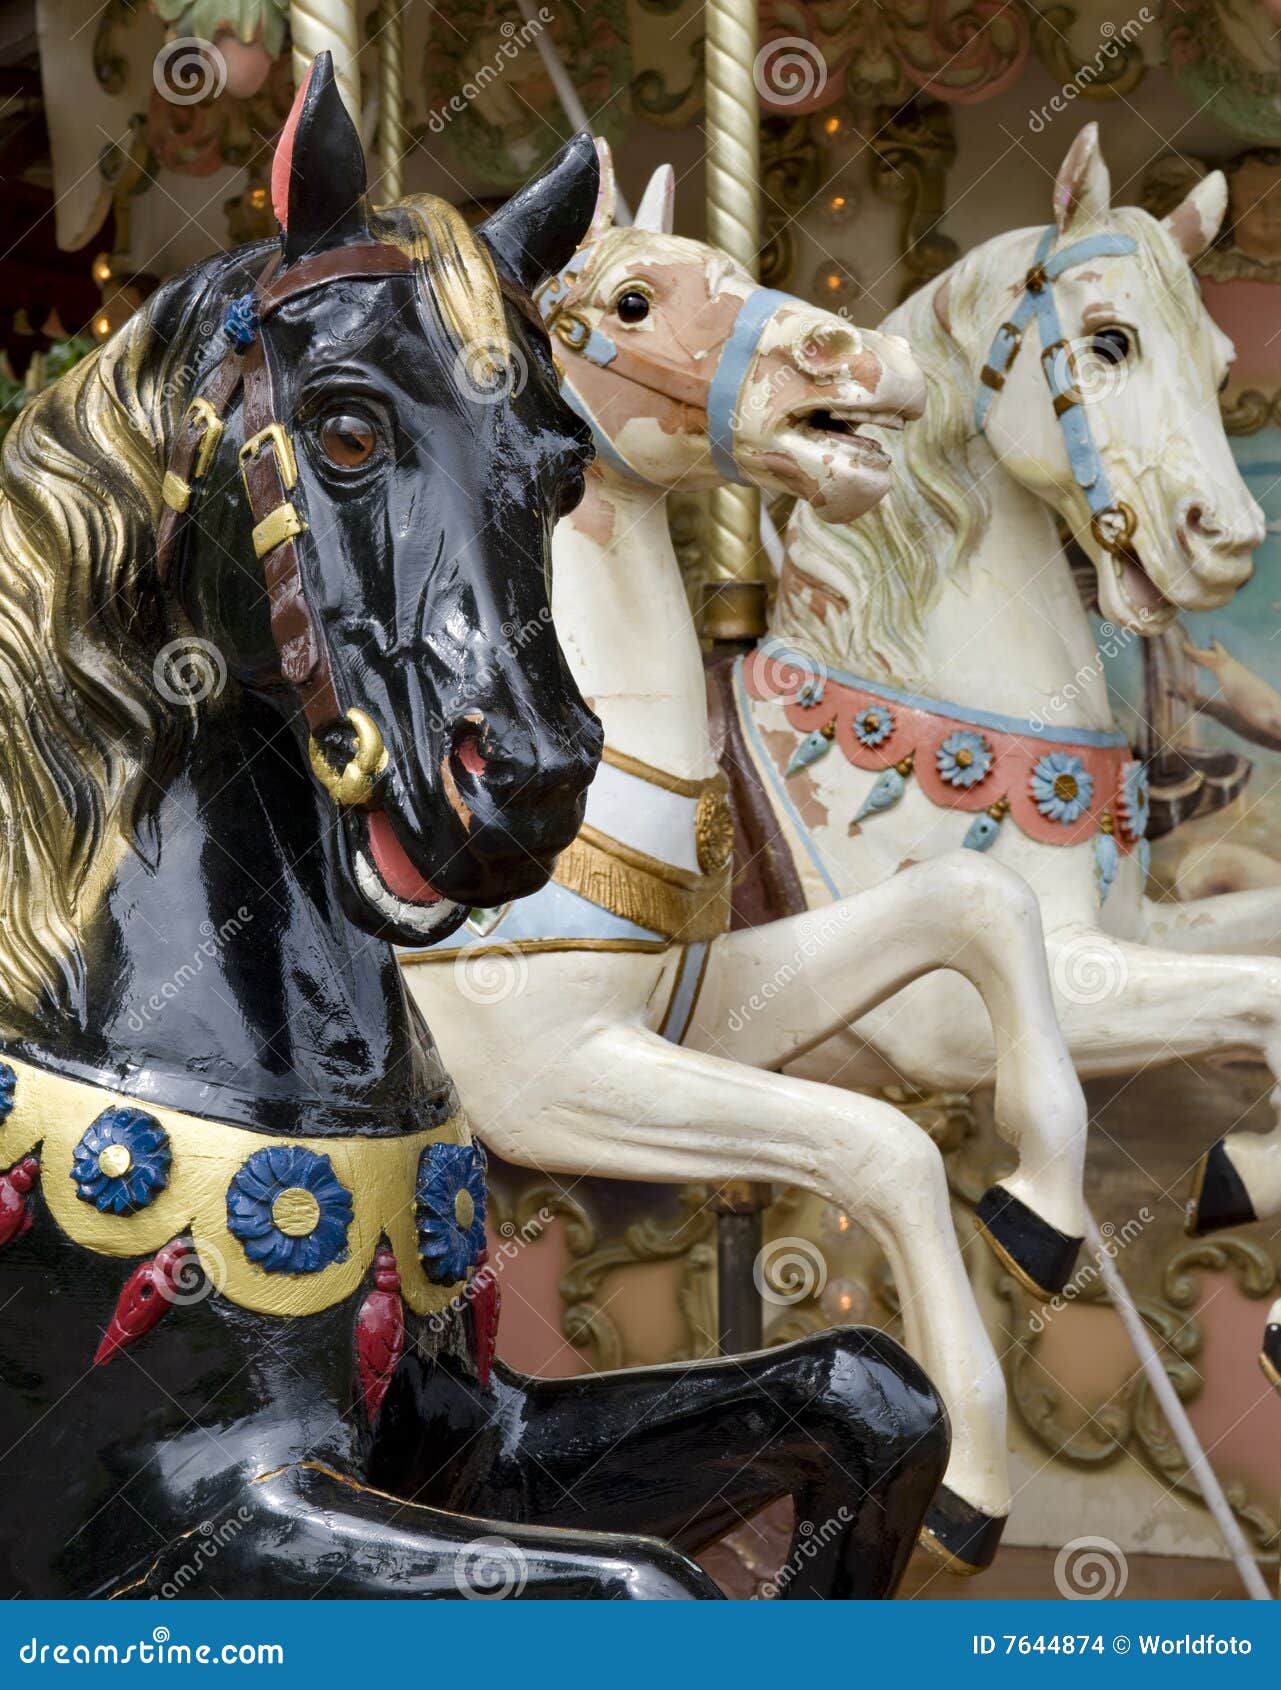 three horses on fairground carousel